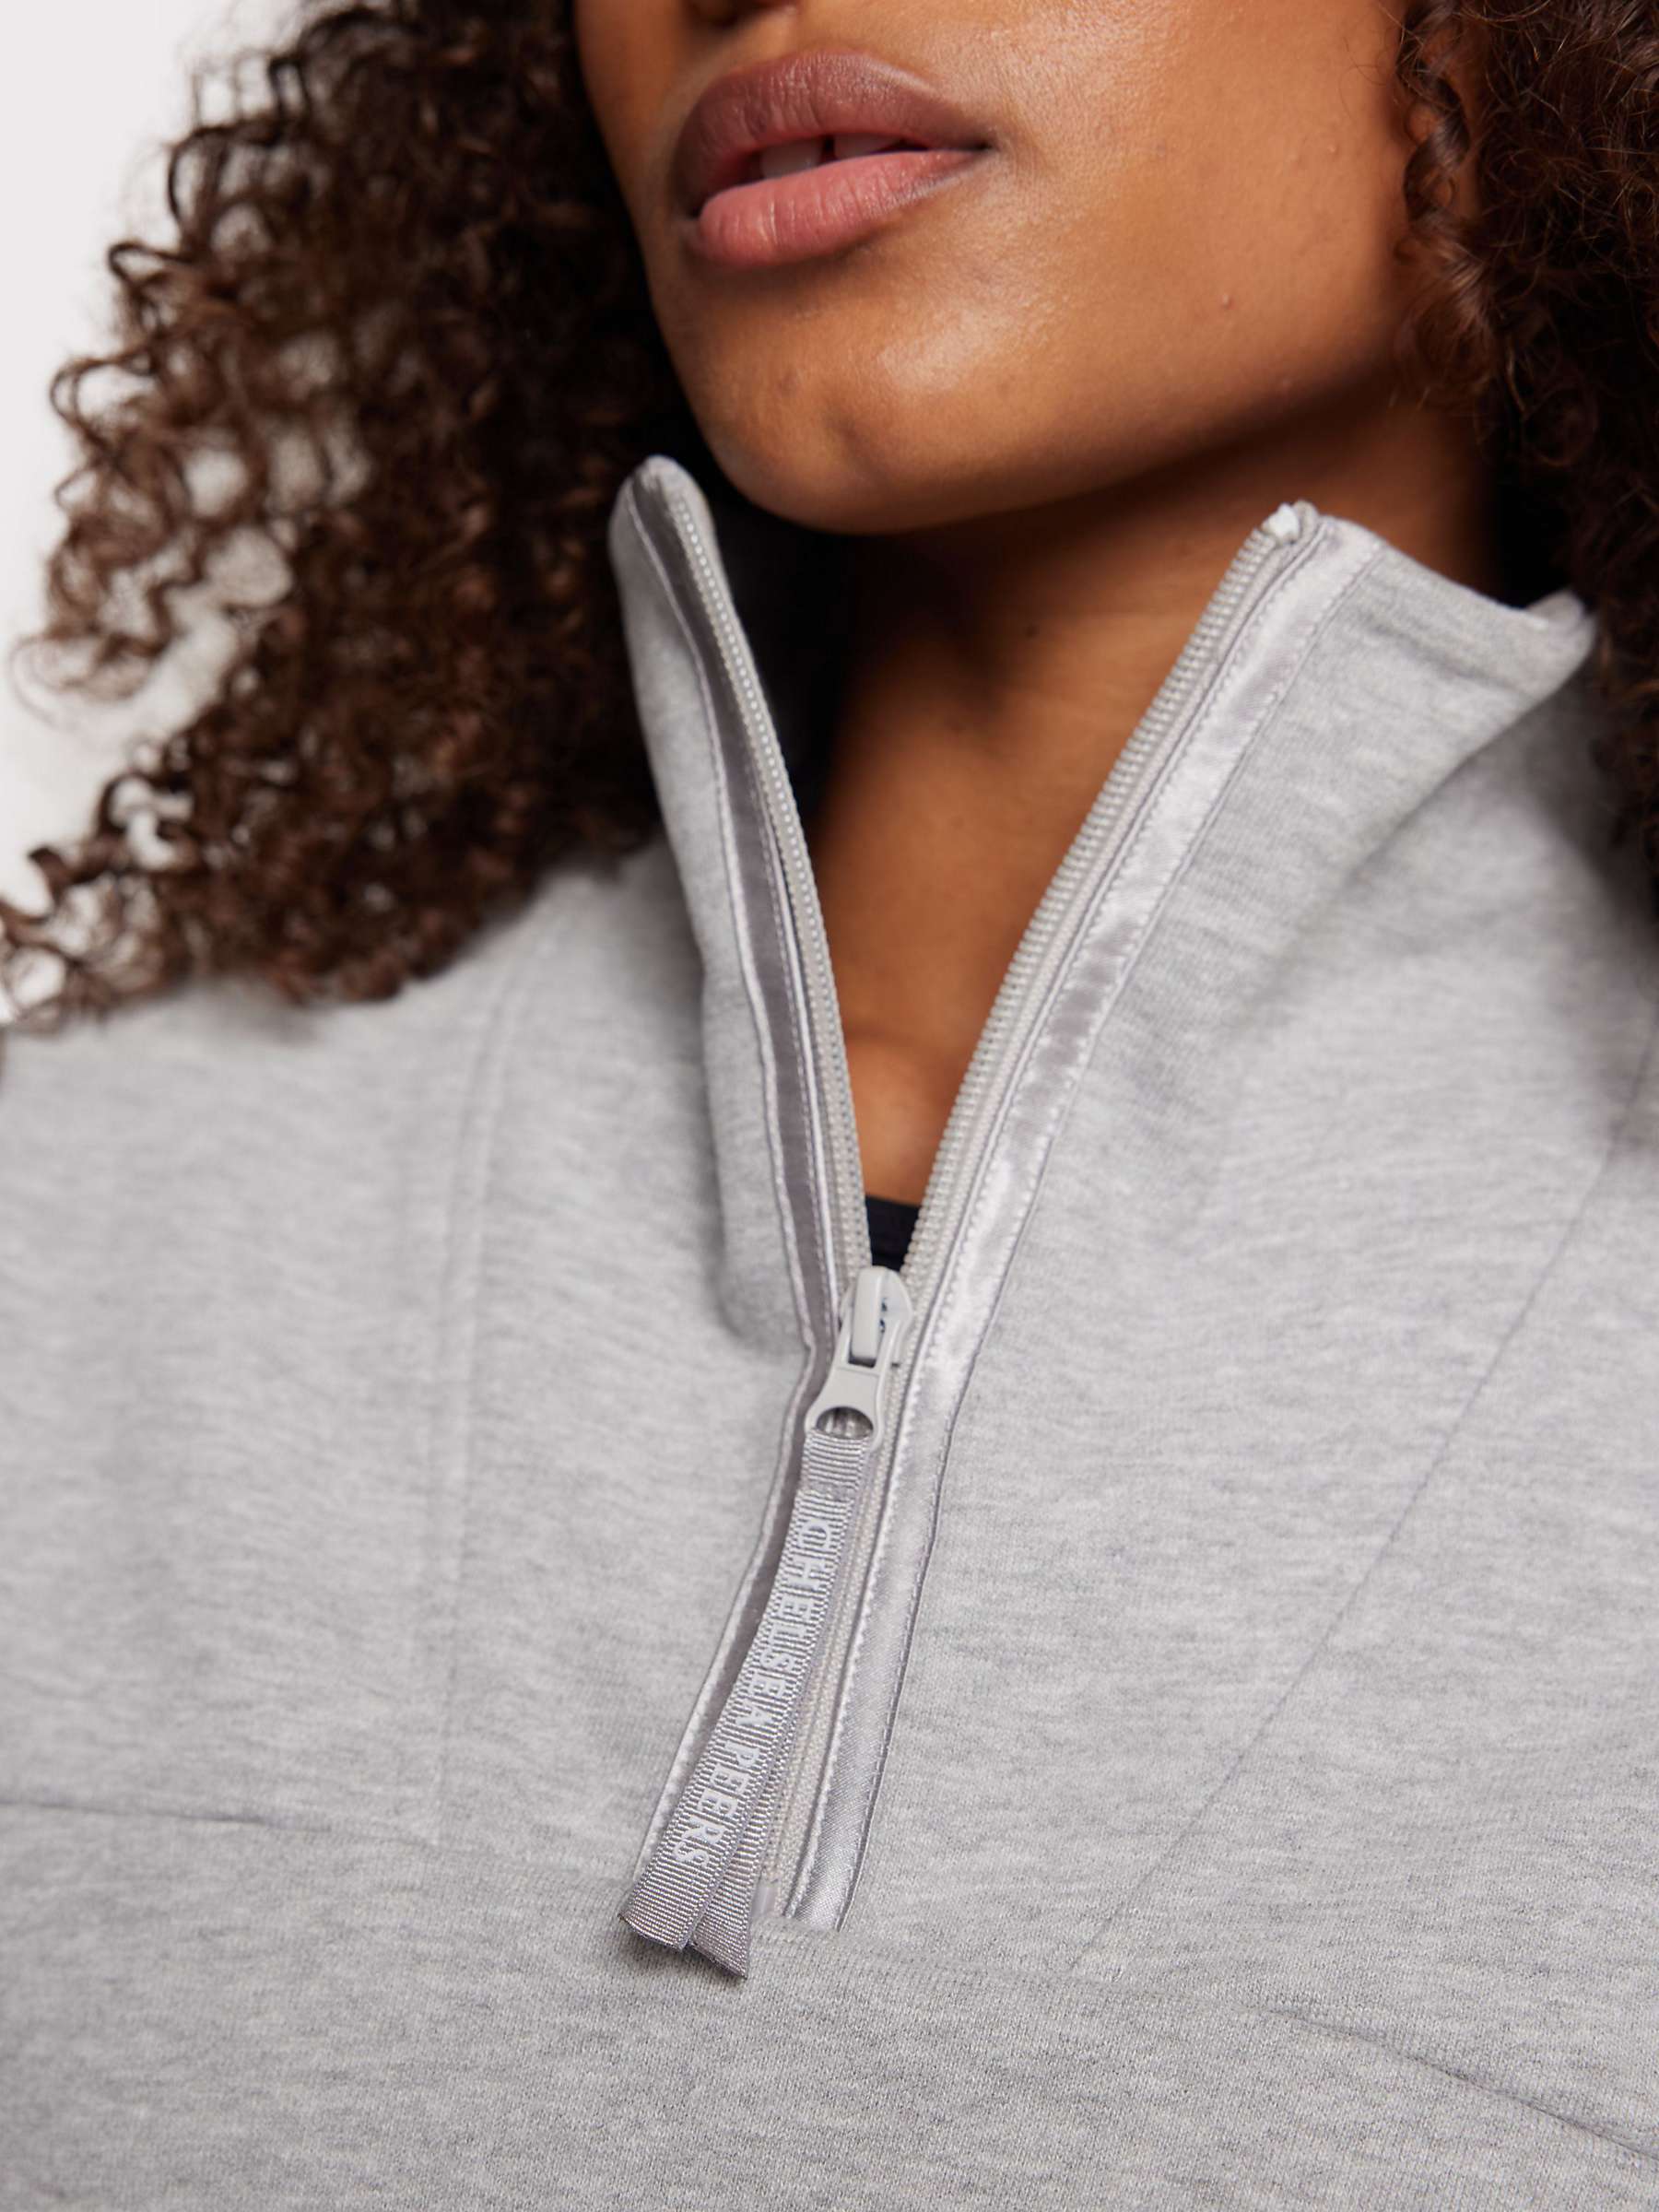 Buy Chelsea Peers Organic Cotton Blend Cropped Sweatshirt, Grey Online at johnlewis.com